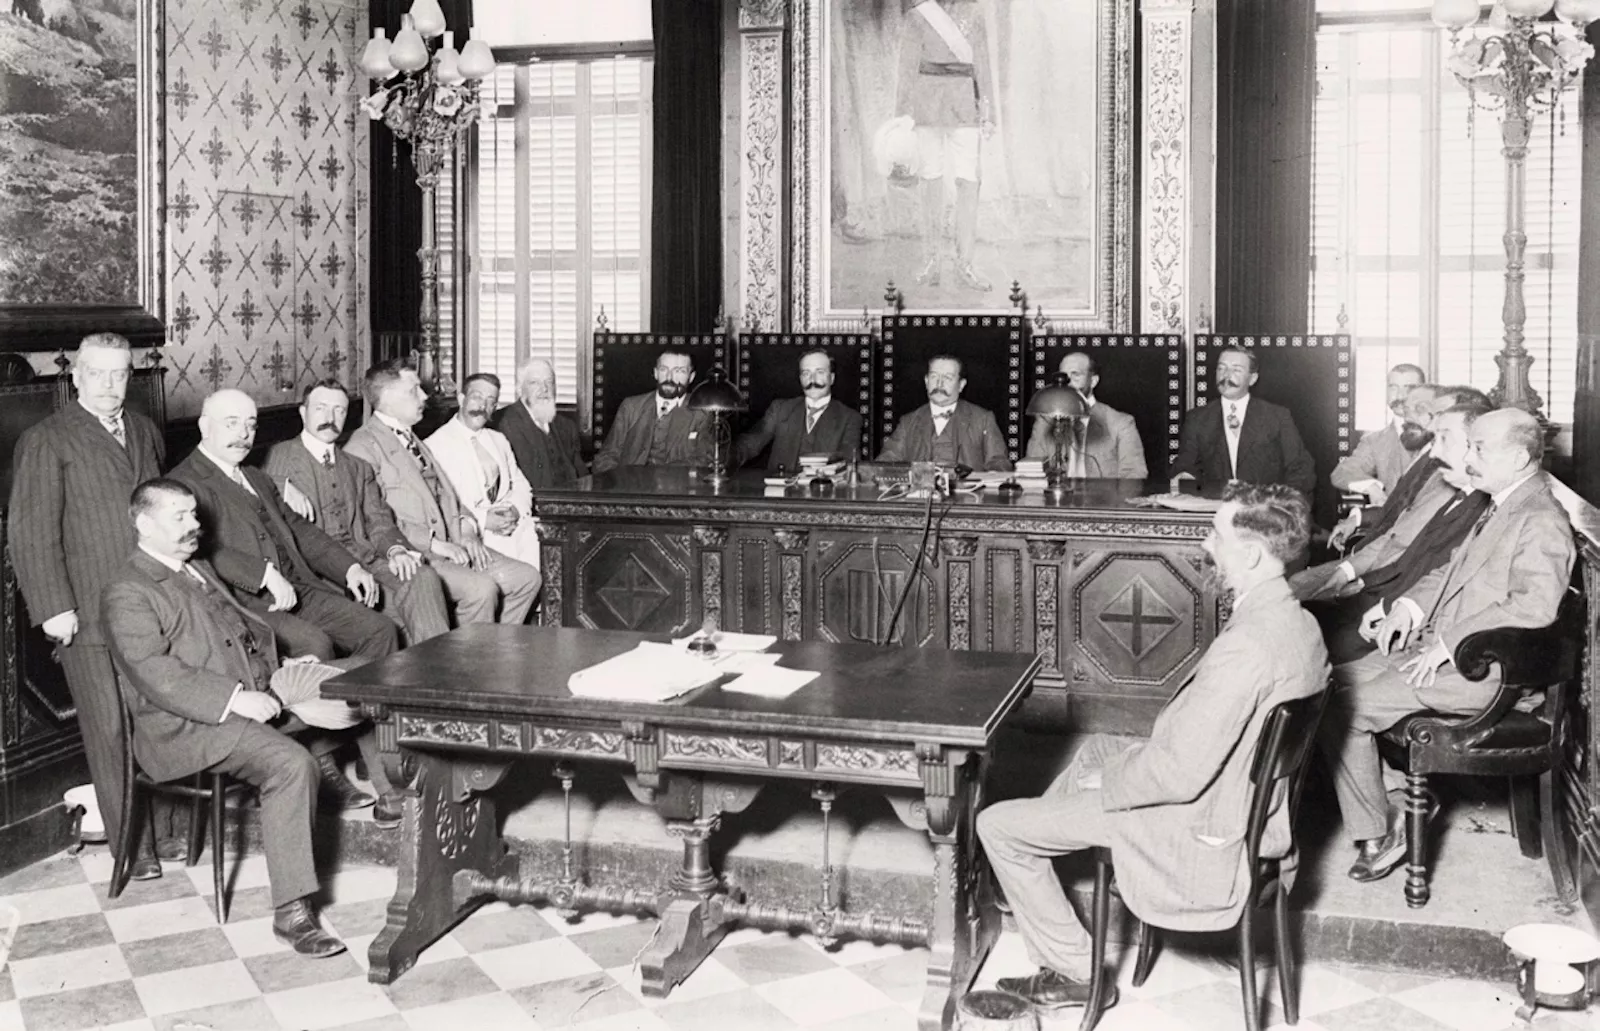 L’assemblea per constituir la Mancomunitat, amb membres de les quatre diputacions, es va reunir al Palau de la Generalitat l’any 1914